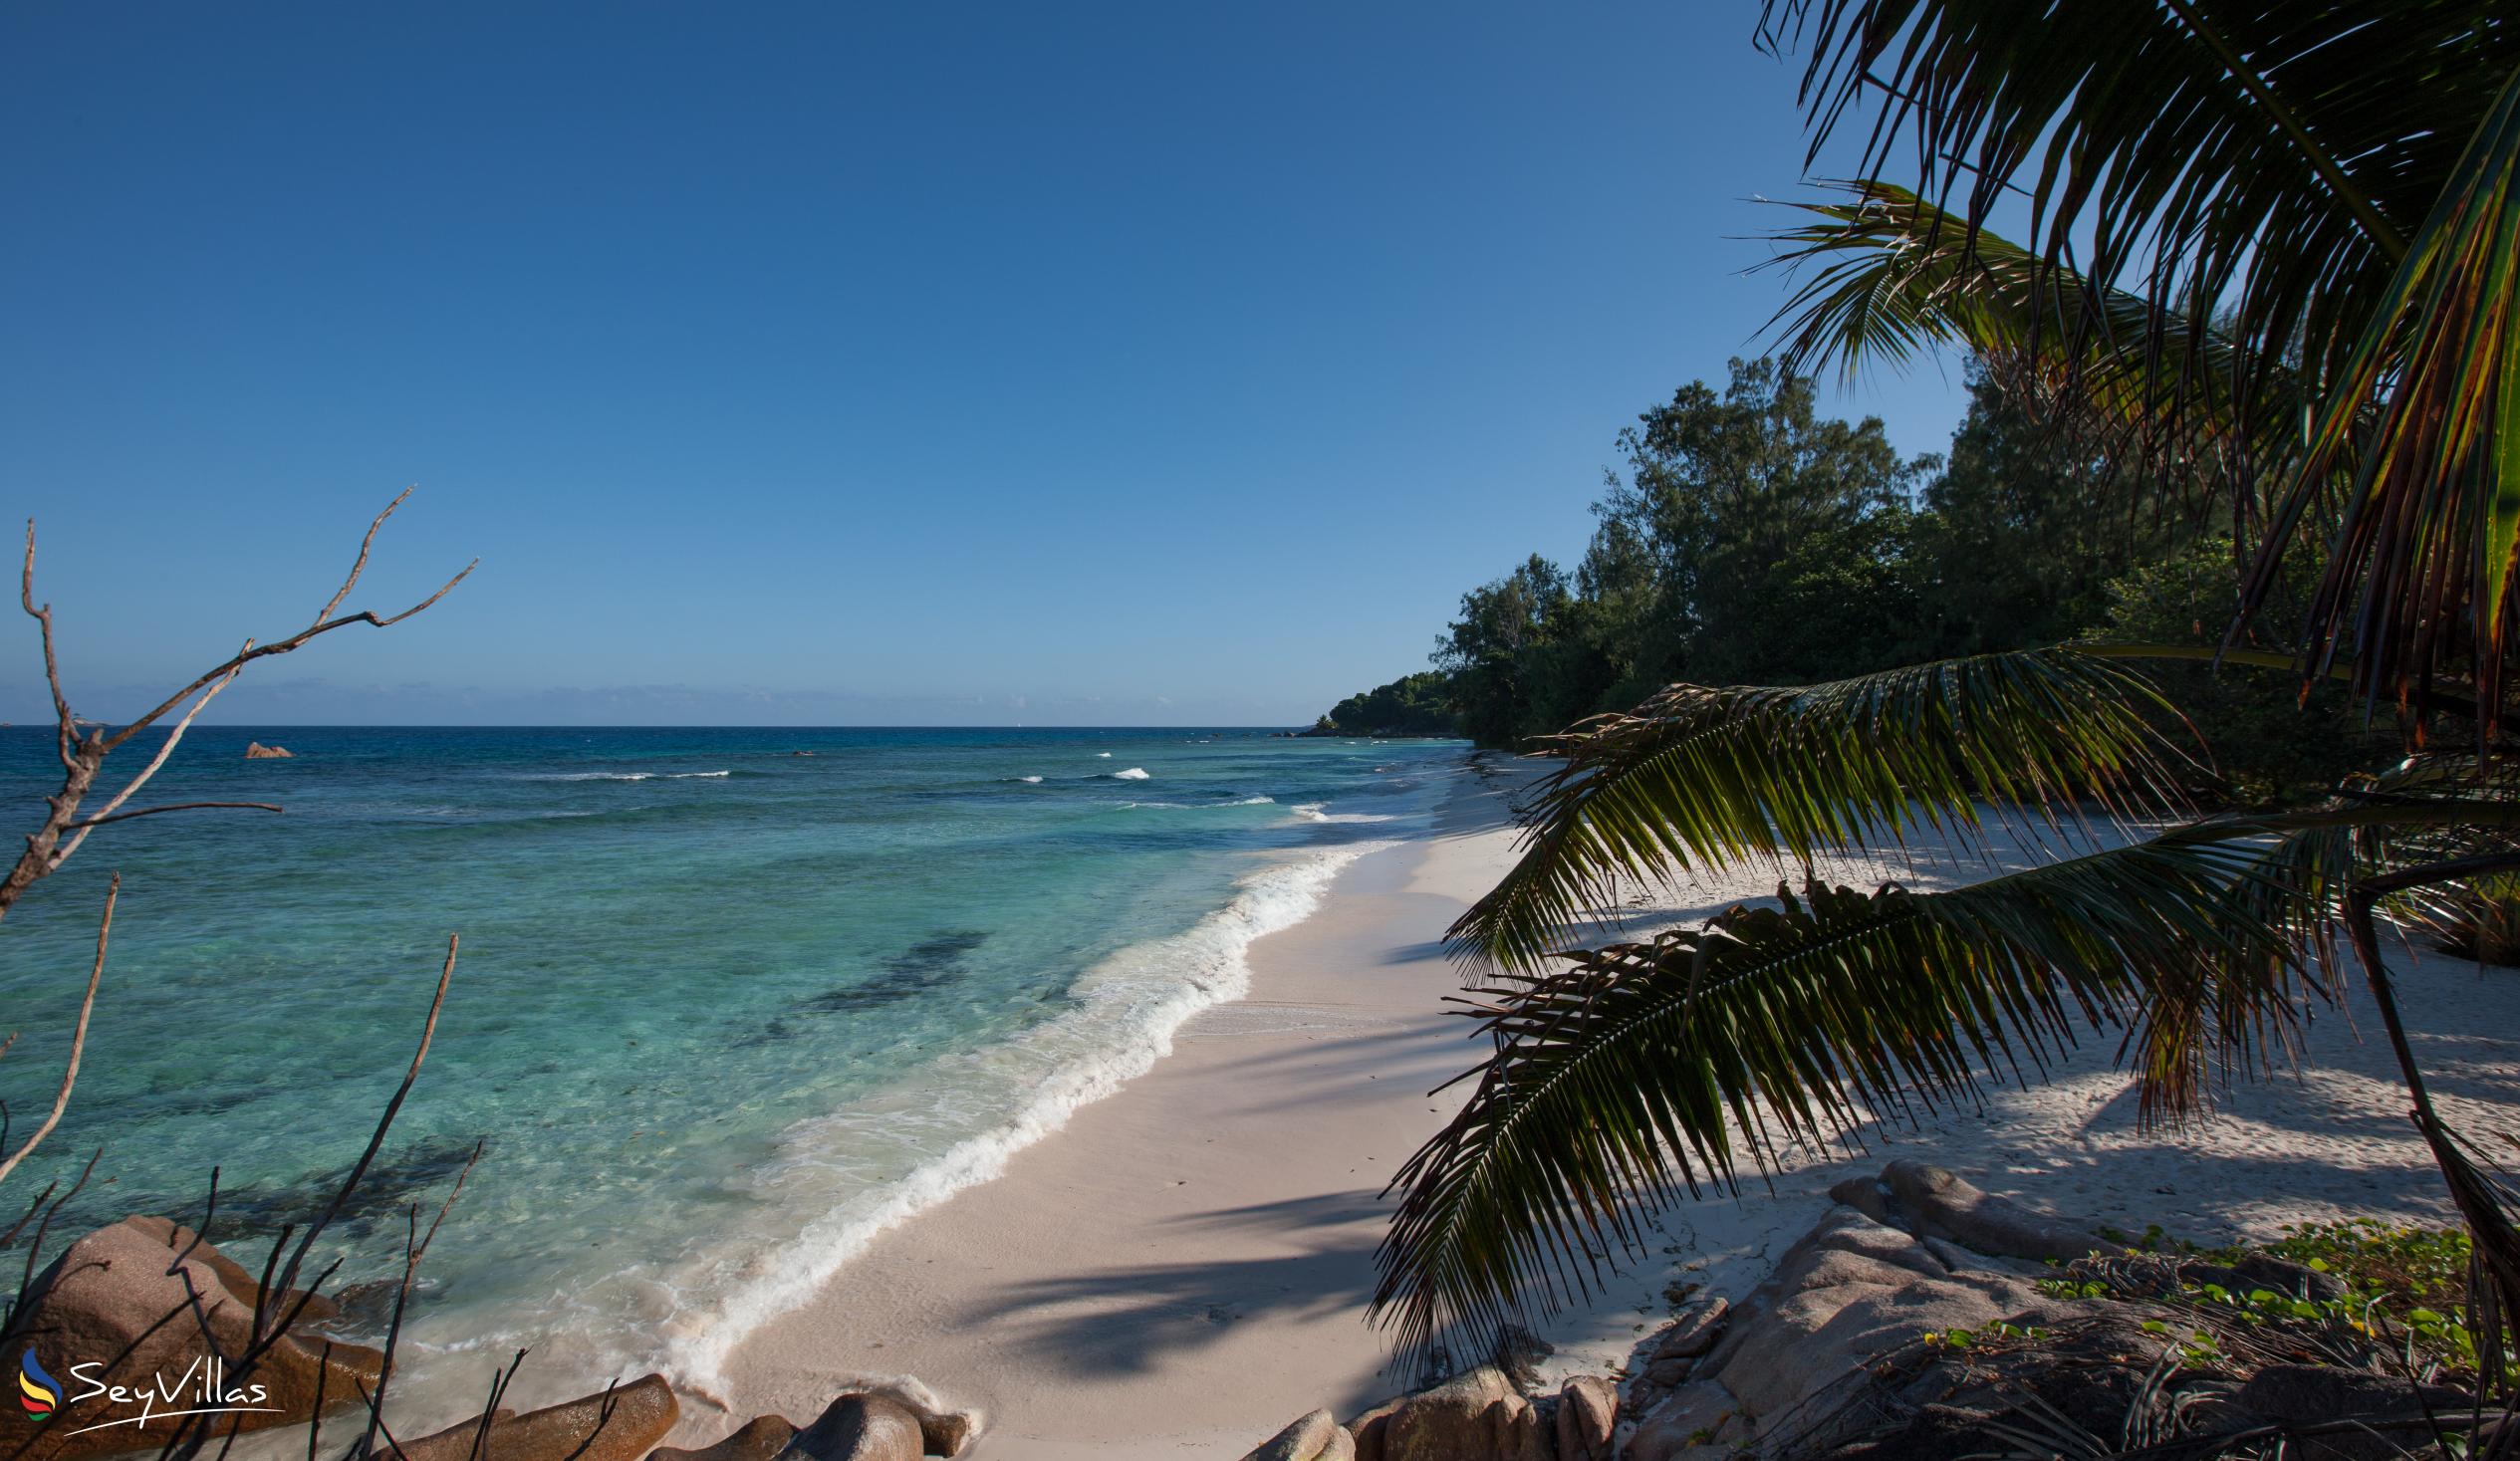 Photo 43: O'Soleil Chalets - Beaches - La Digue (Seychelles)